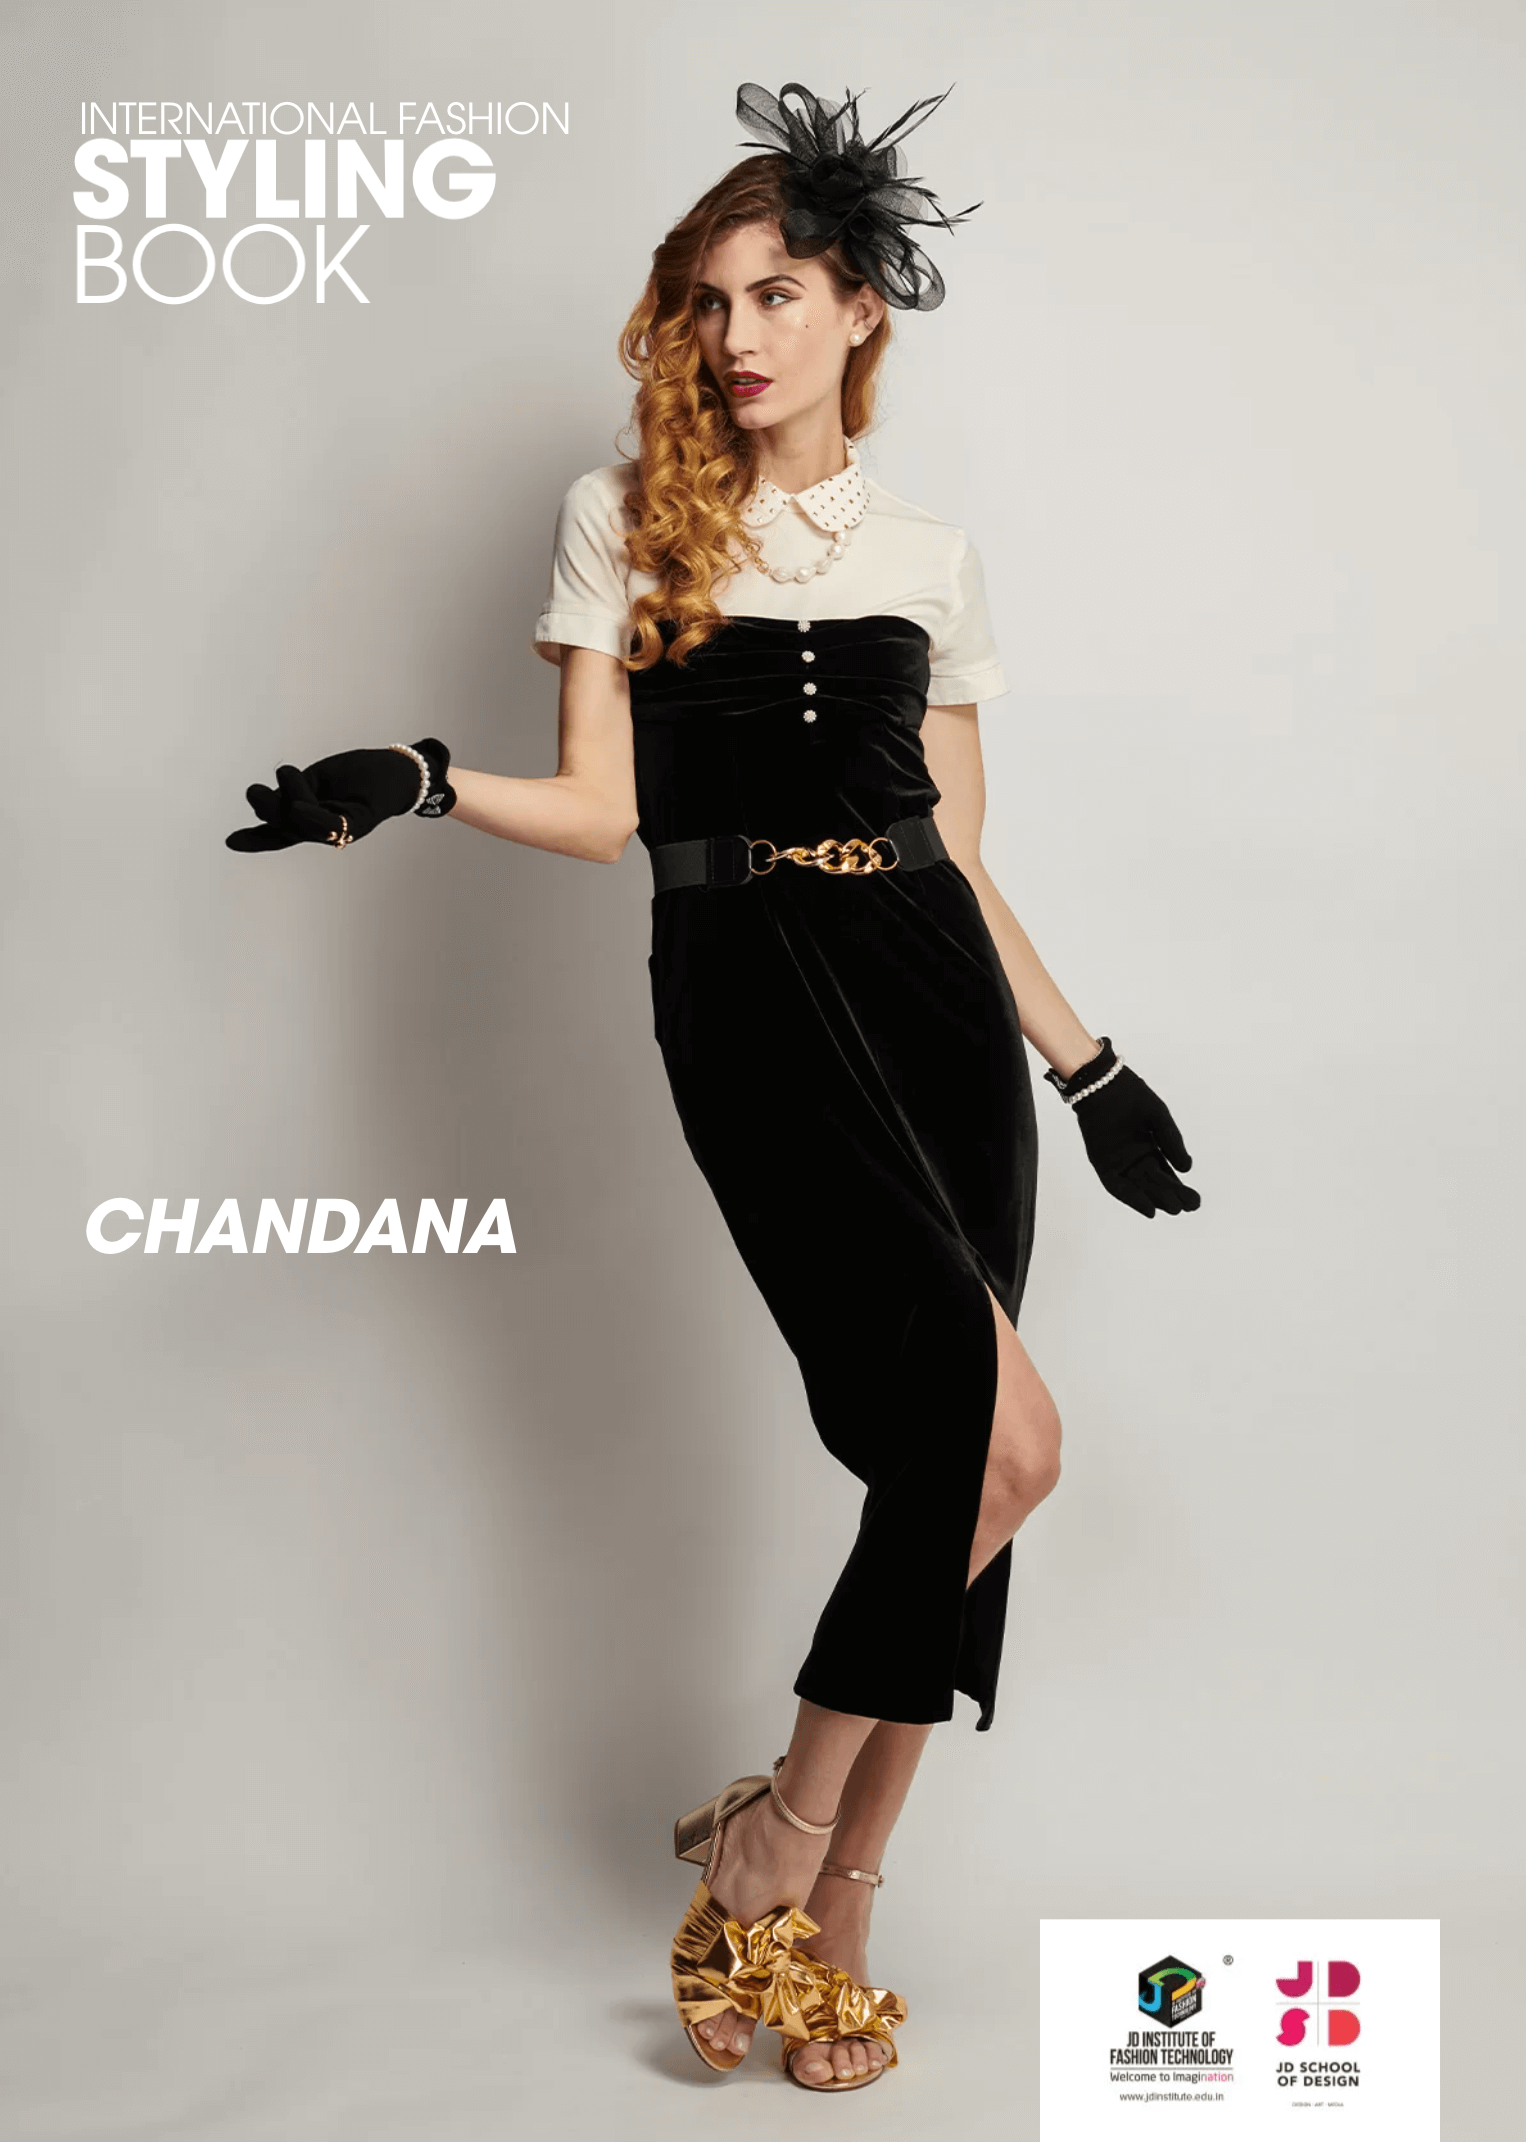 Chandana